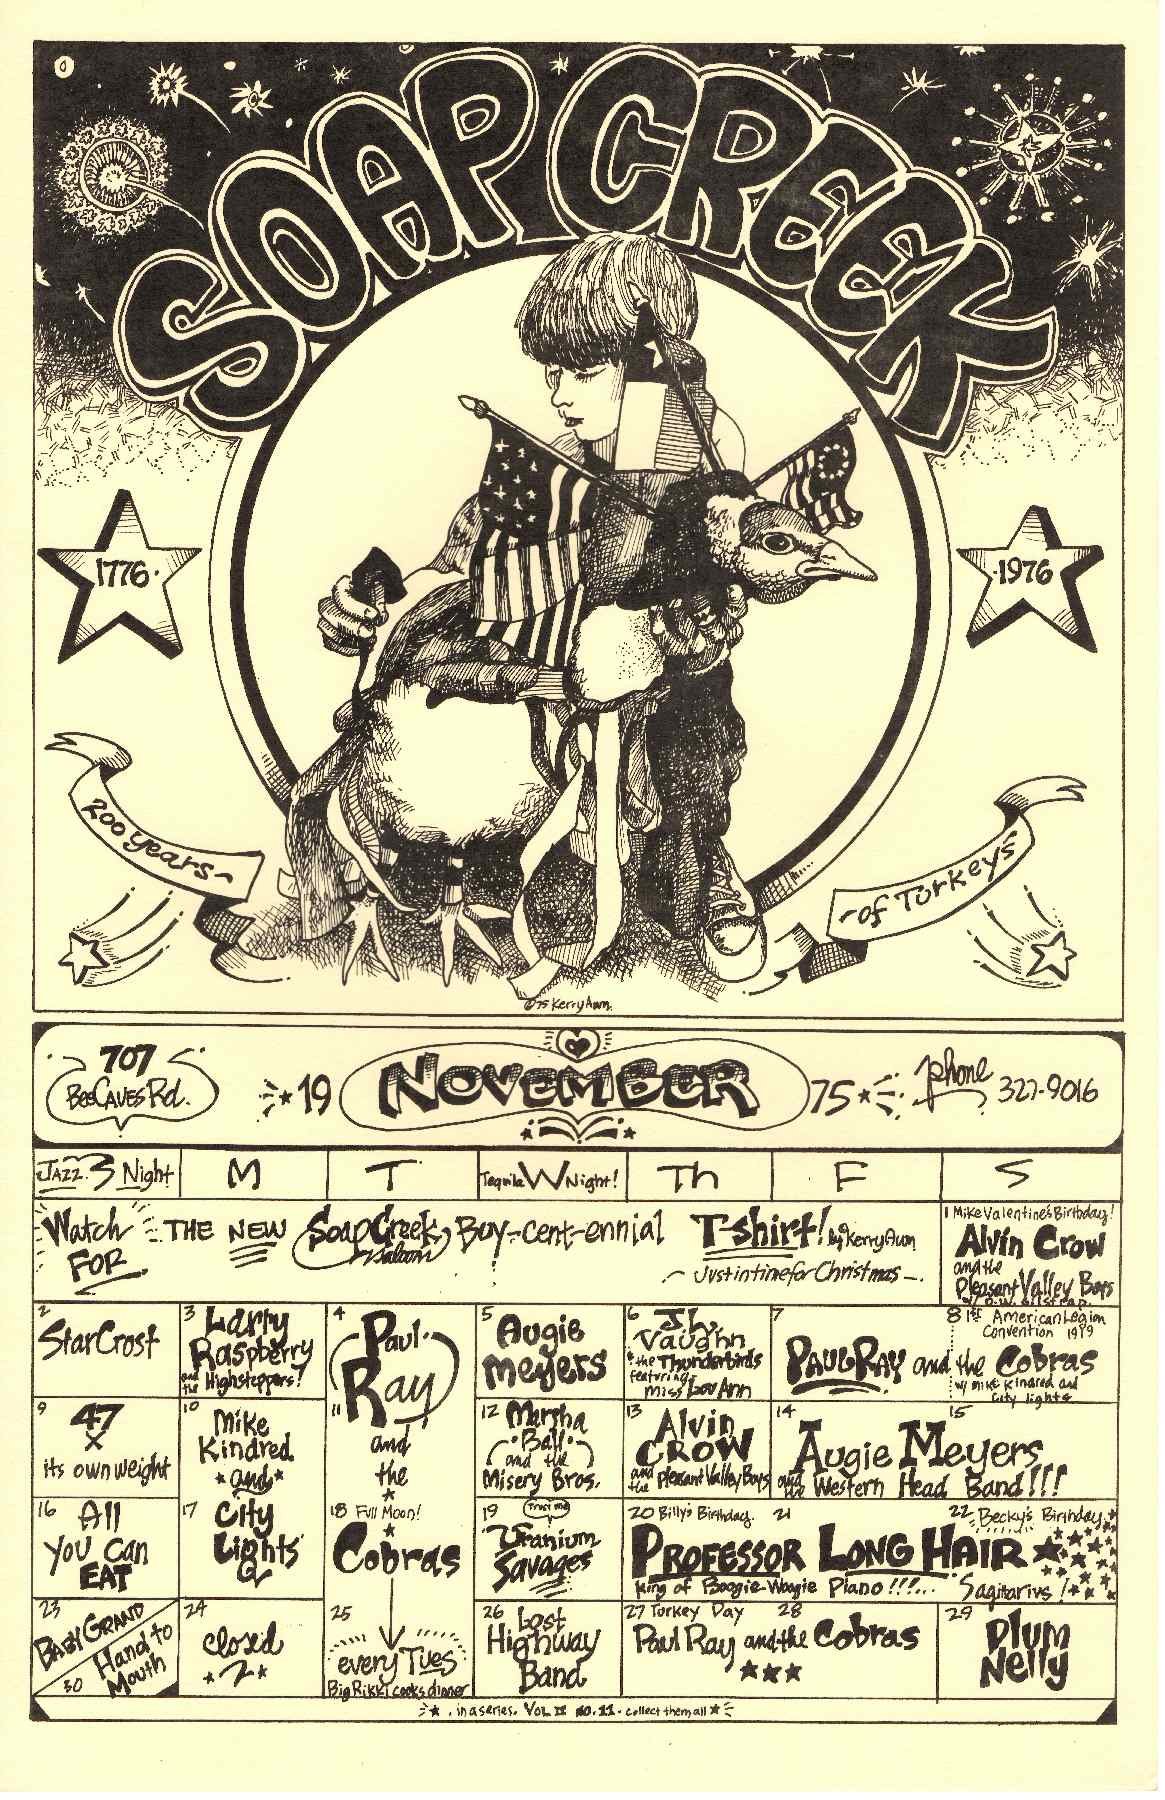 1975.11.November calendar.Soap Creek Saloon.Awn.JPG